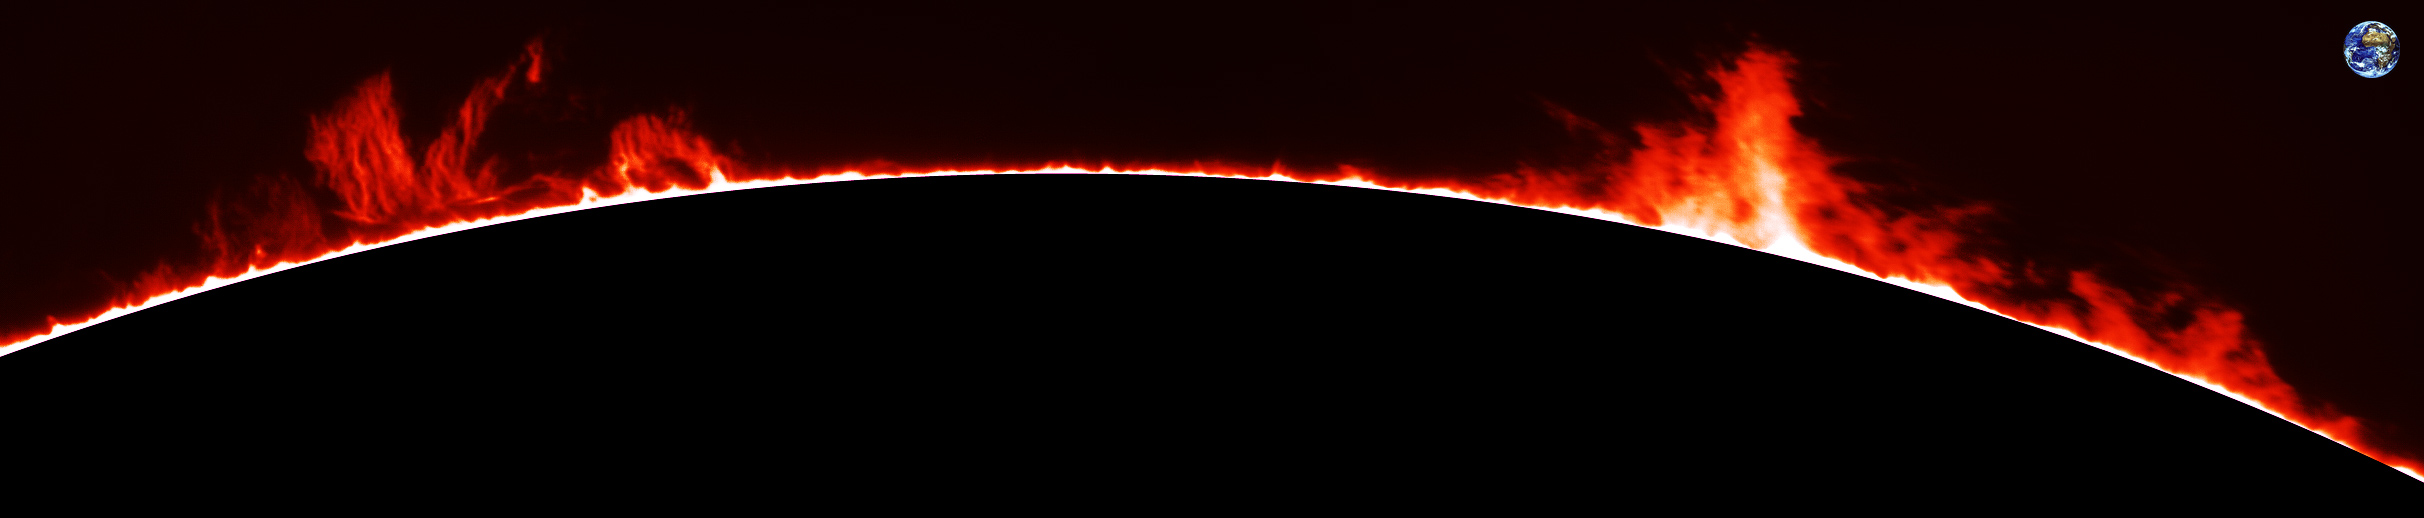 Protubérance solaire en Hα le 02/07/11 à la TOA 130 + PST & barlow 3 x